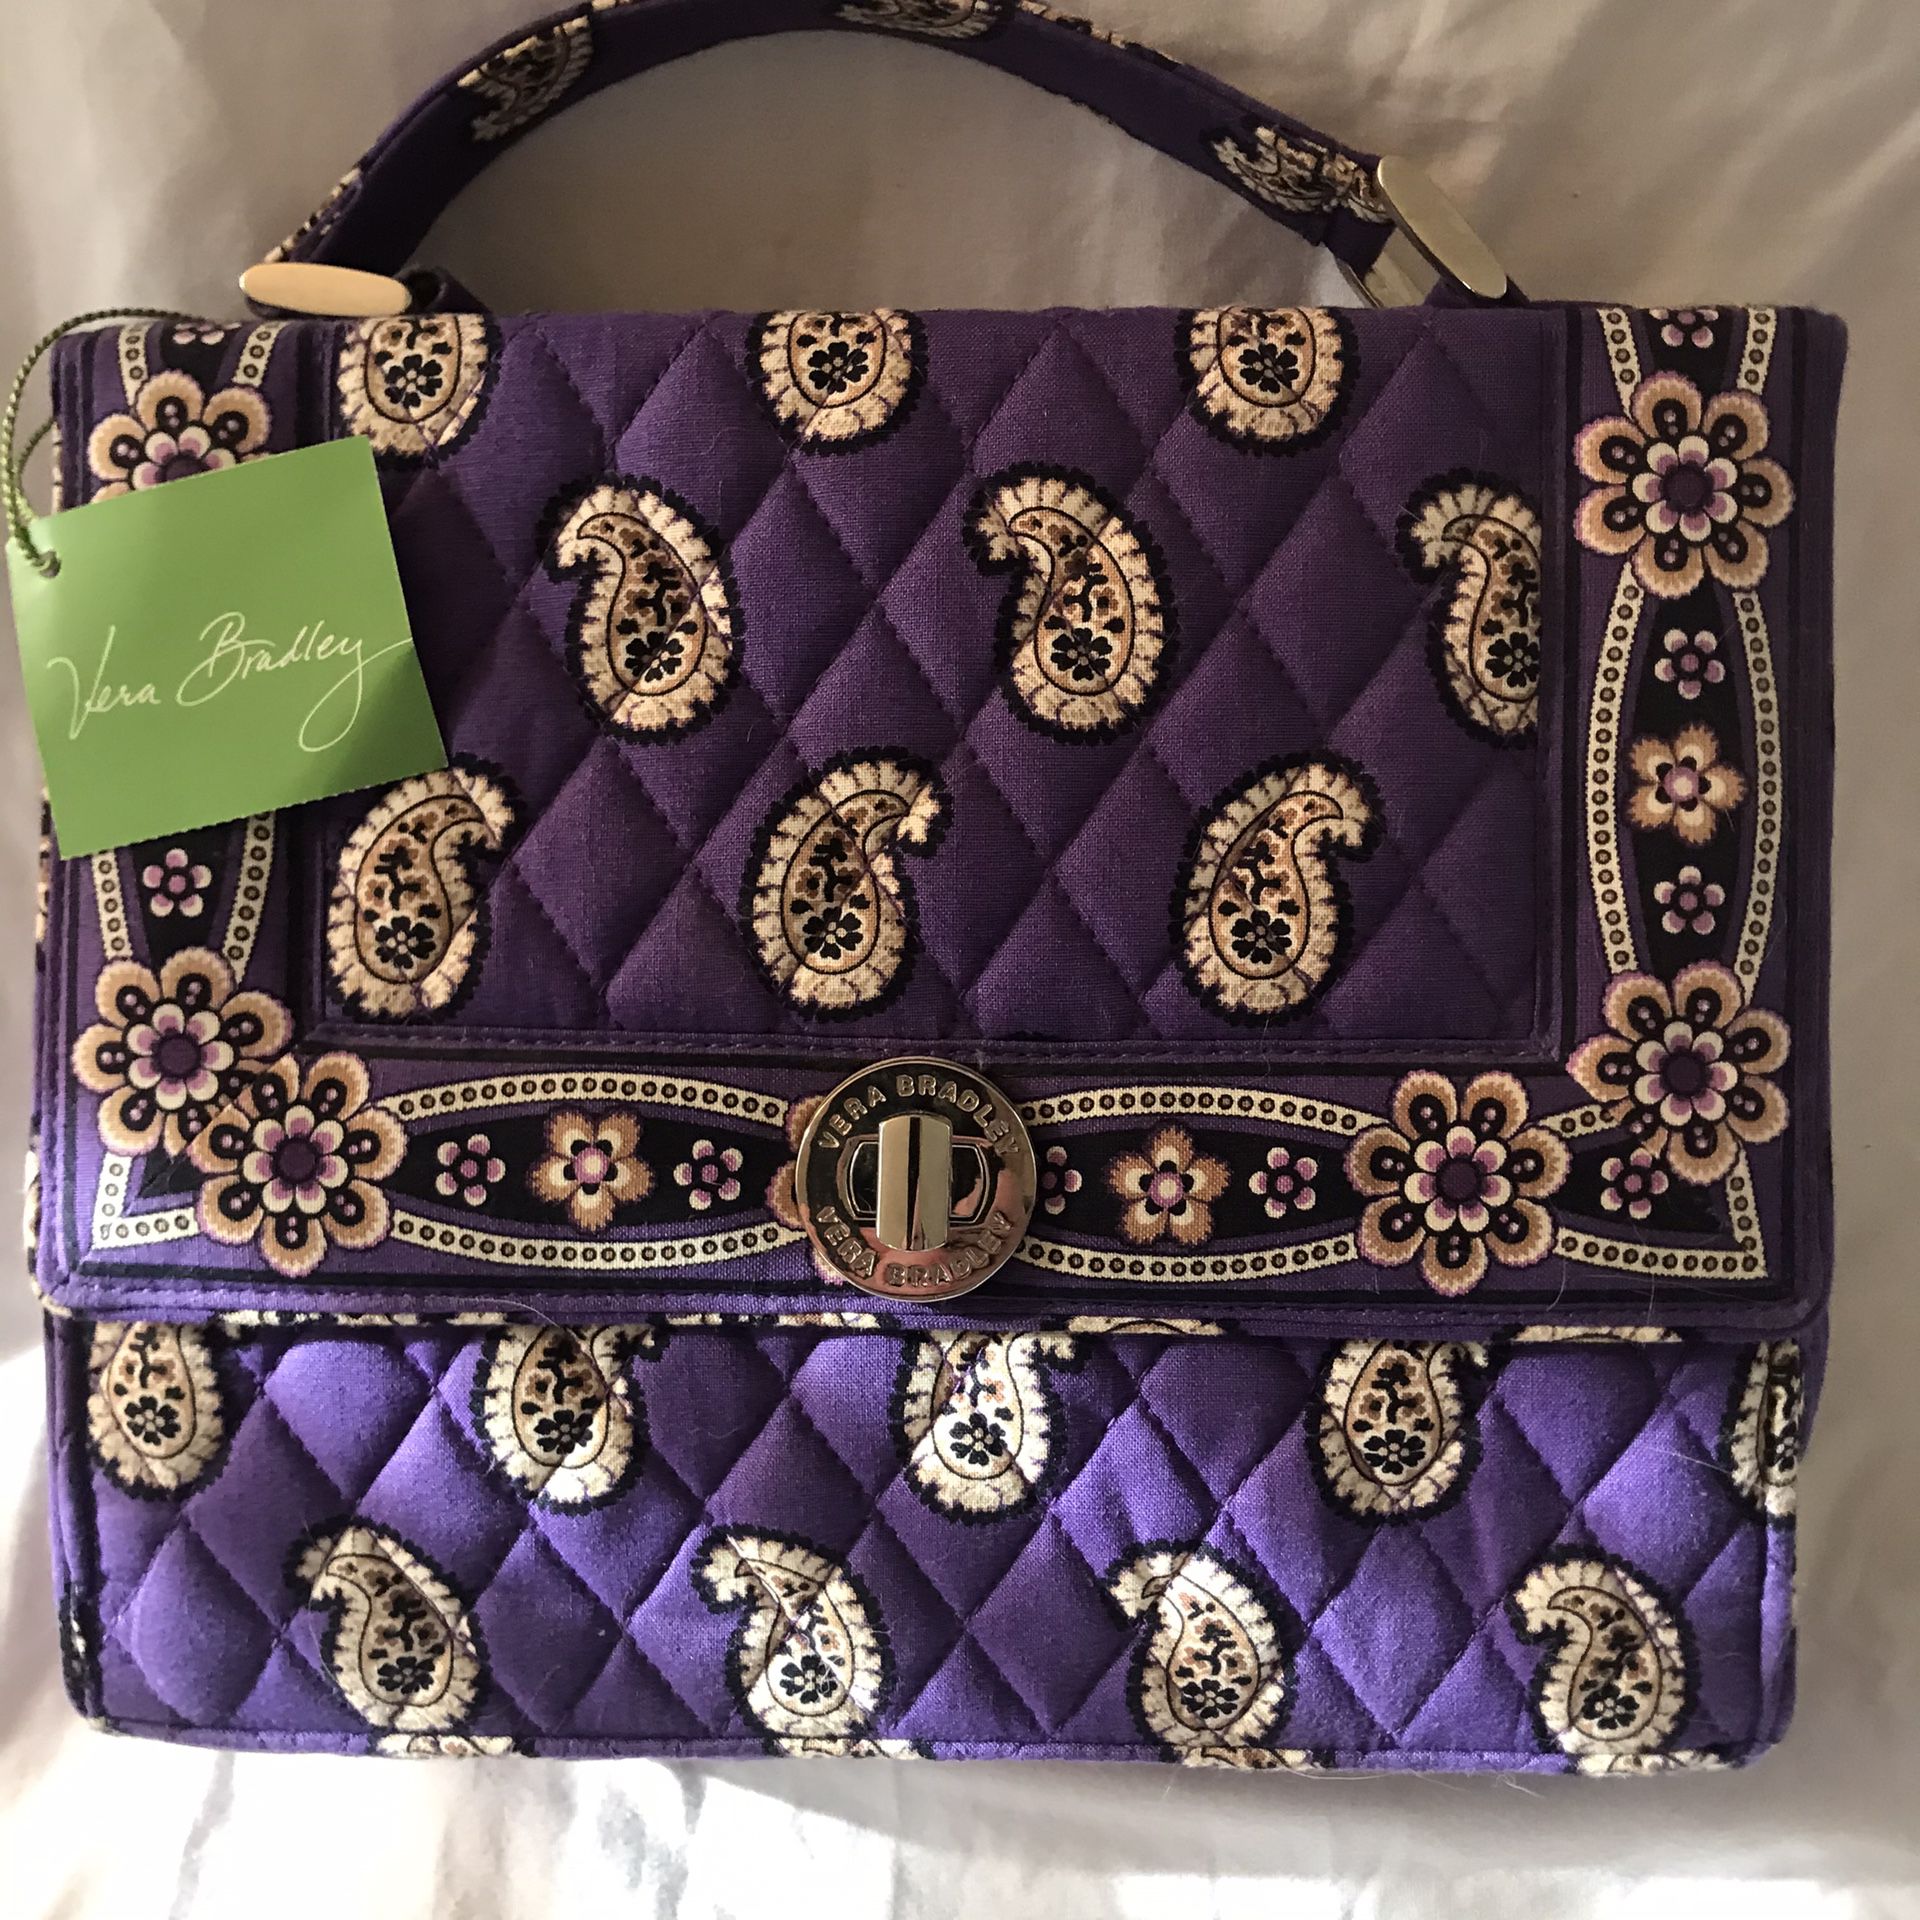 Brand New with Tags!! Vera Bradley Julia Simply Violet Bag